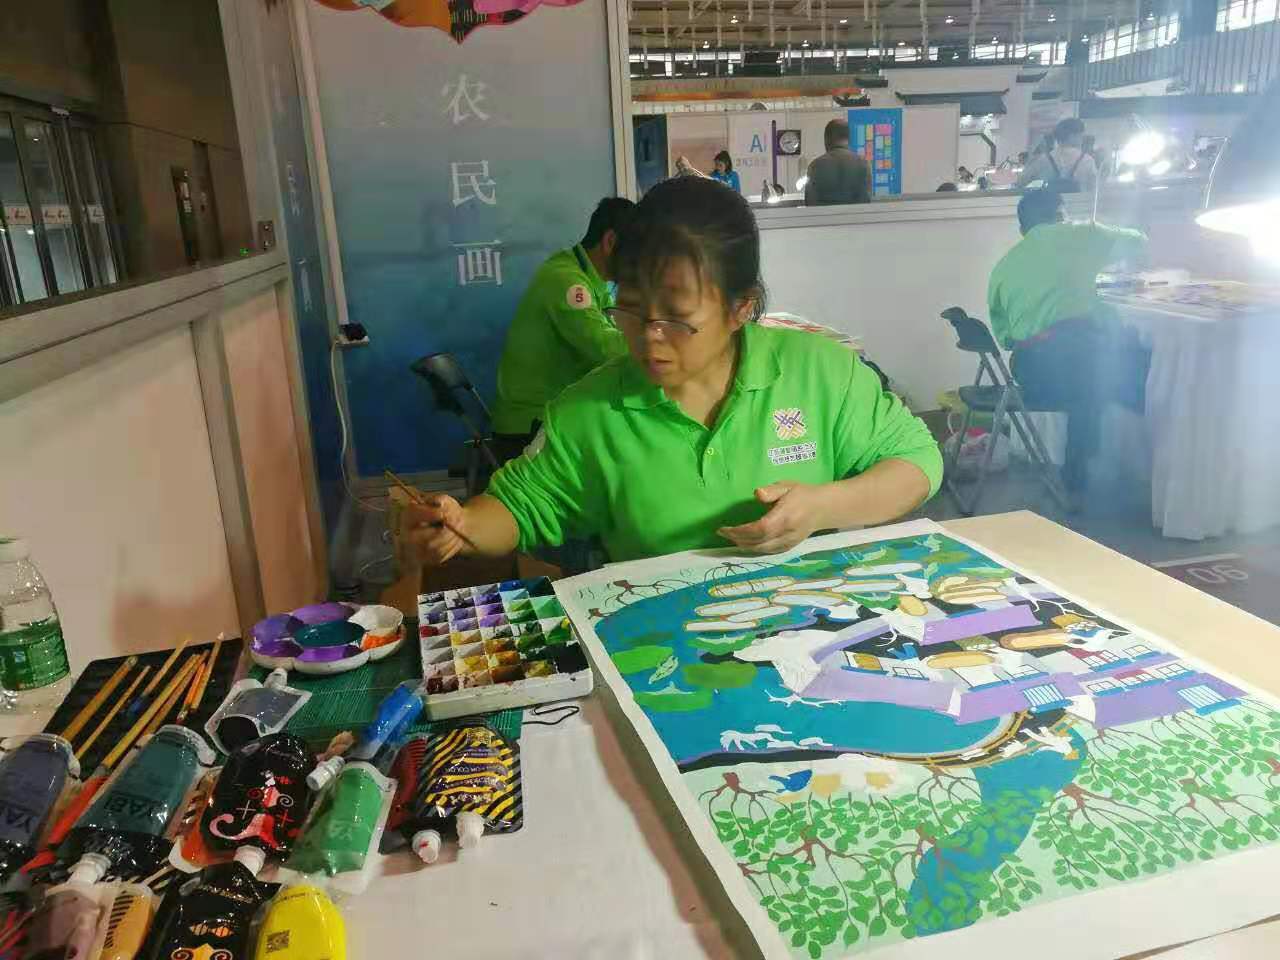 她的农民画登上了中国最高殿堂 ——记邳州农民画家张士彩 (陈景胜)